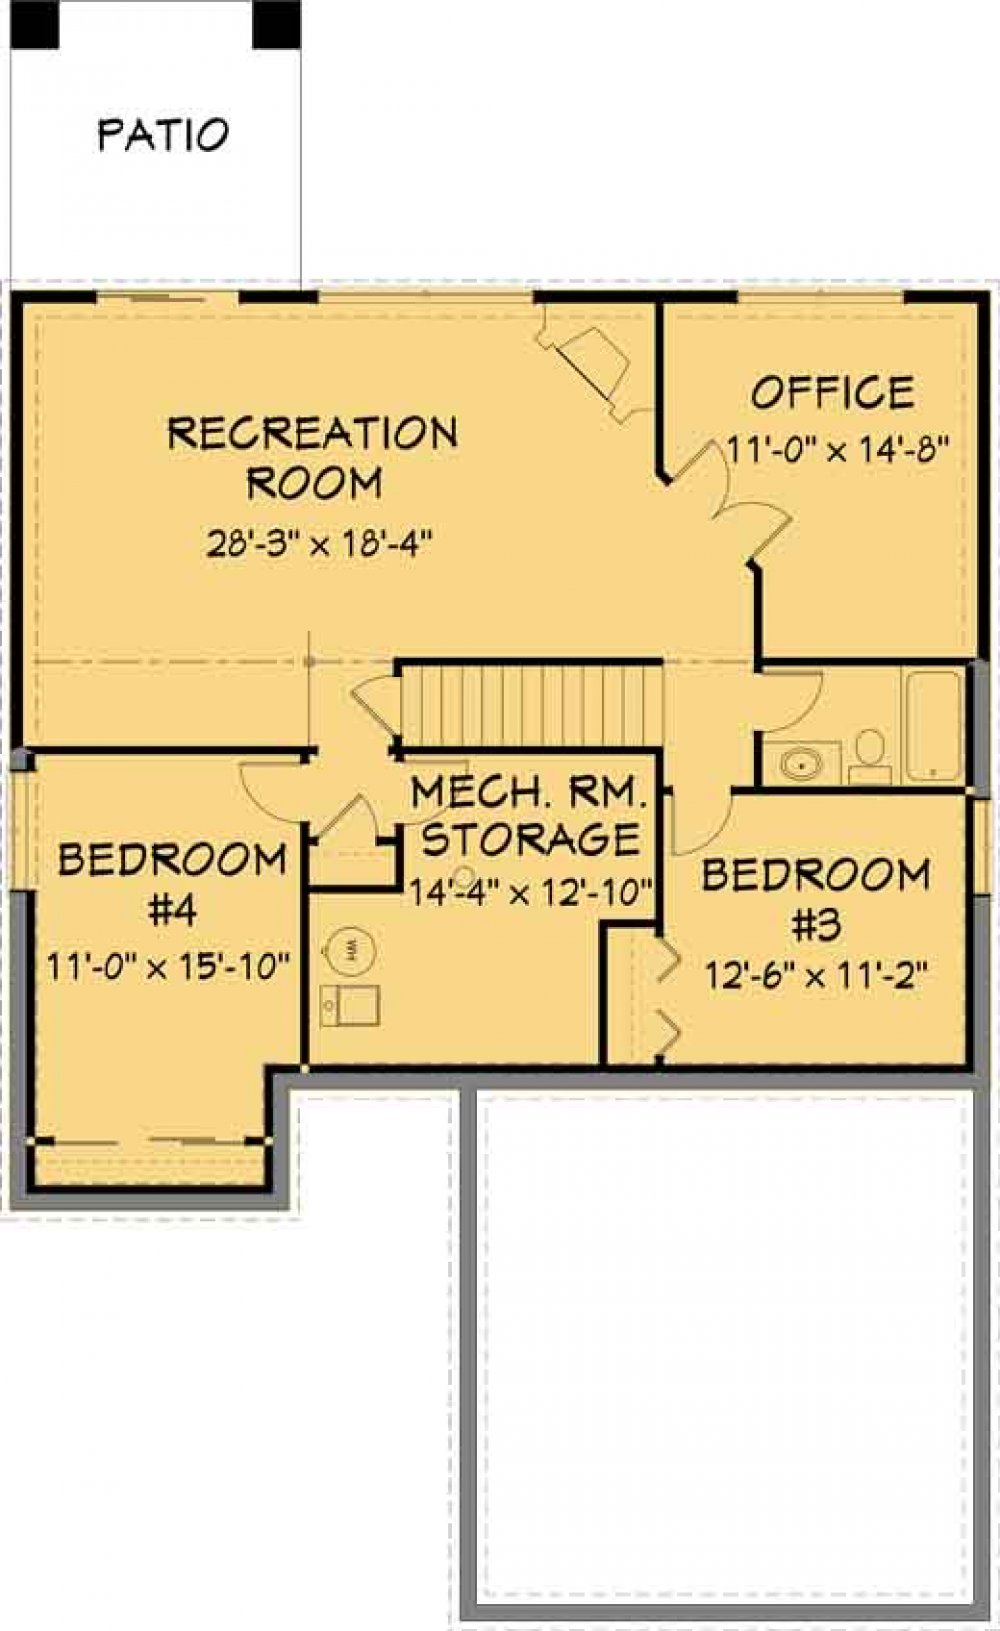 House Plan E1283-10  Lower Floor Plan